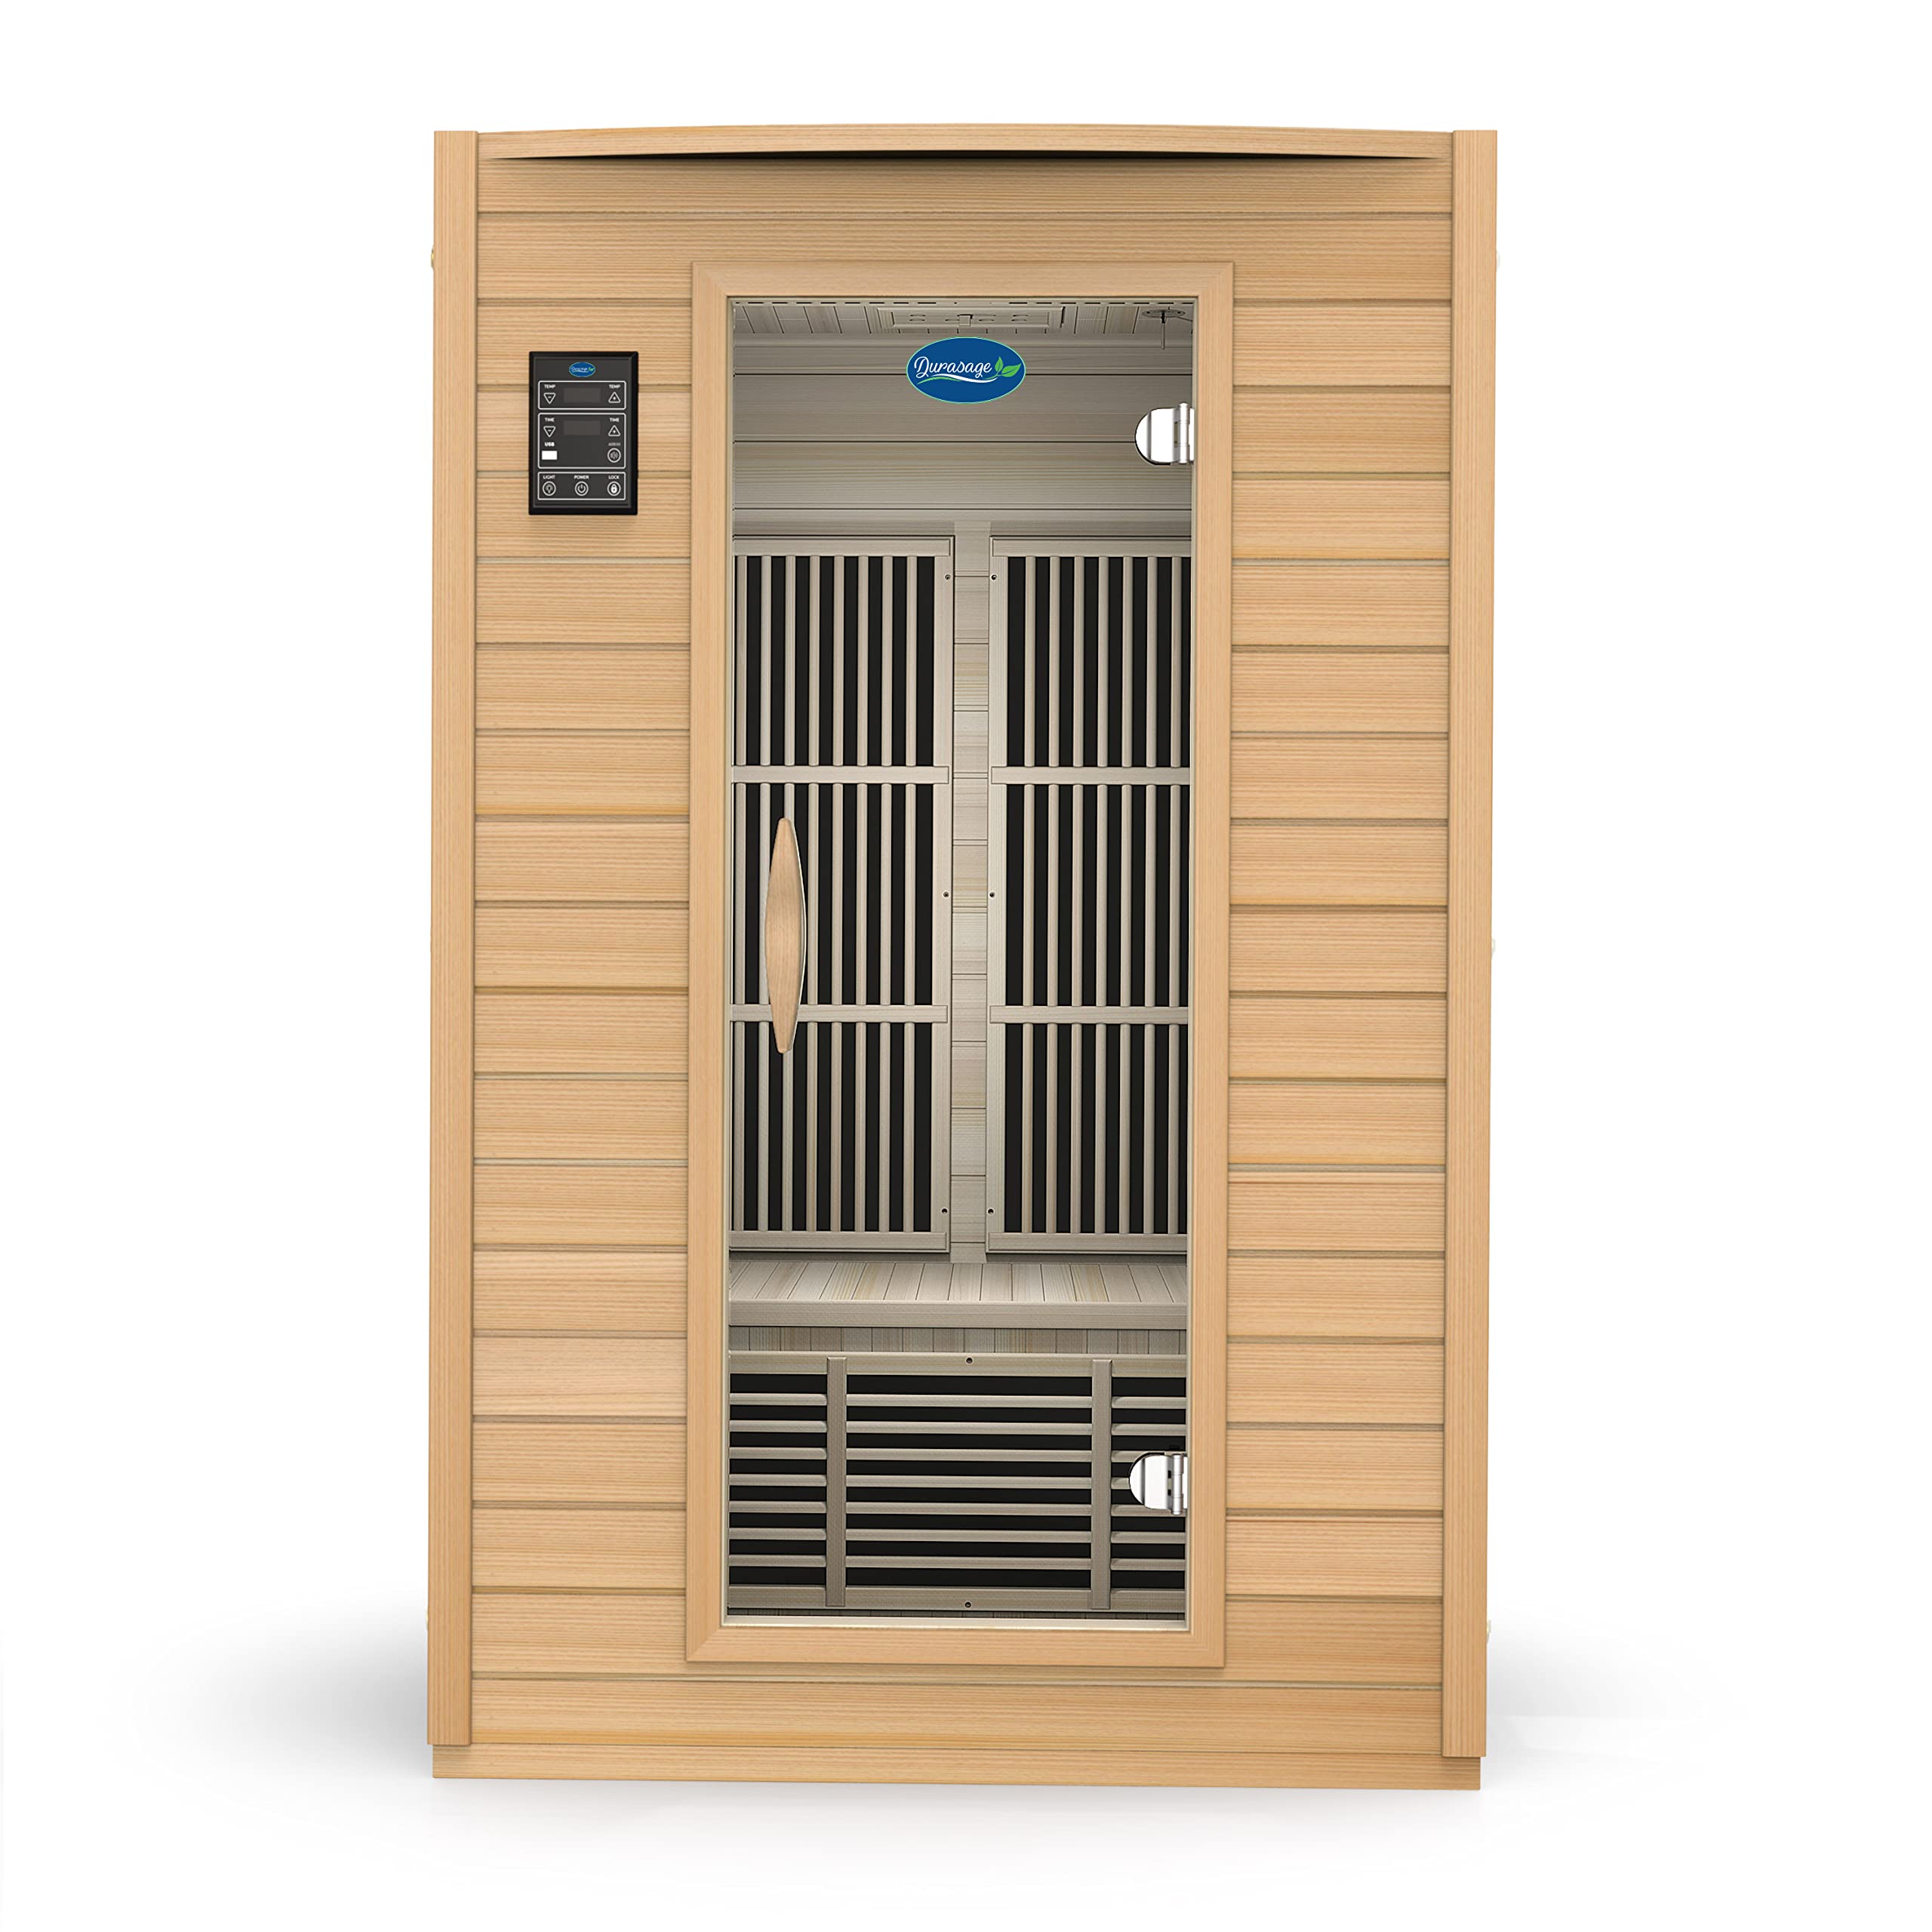 Durasage 2-Person Carbon Infrared Sauna - Canadian Hemlock Wooden Sauna - 1700 Watts - Premium Stereo Sound